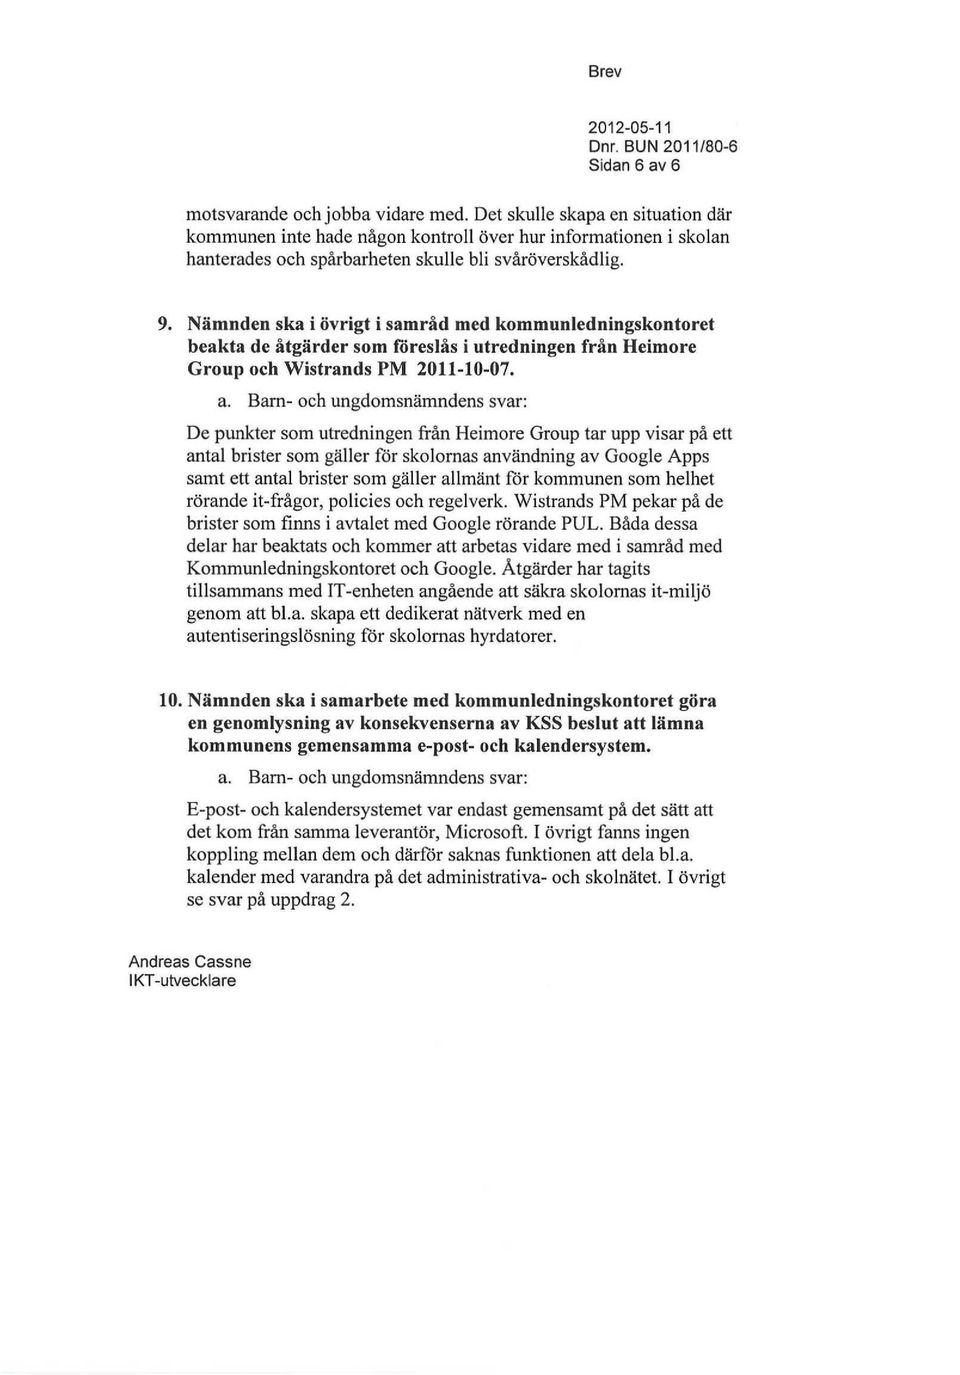 Nämnden ska i övrigt i samråd med kommunledningskontoret beakta de åtgärder som föreslås i utredningen från Heimore Group och Wistrands PM 2011-10-07.